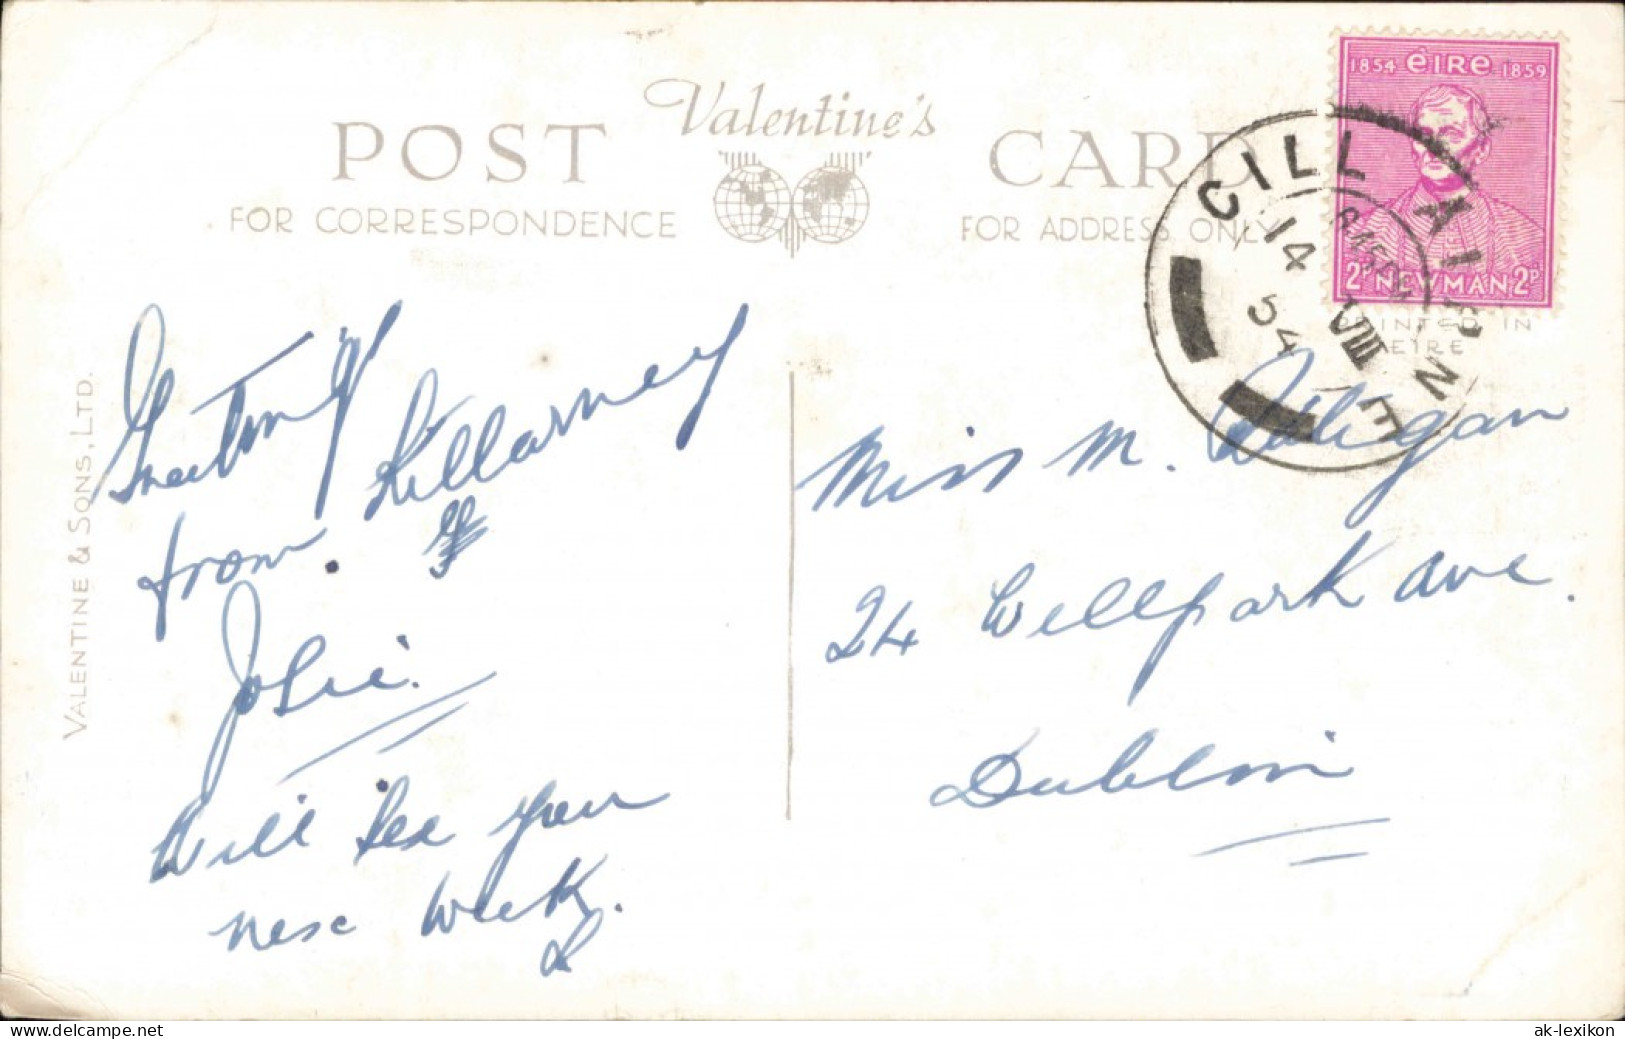 Postcard Killarney COLLEEN BAWN ROCK 1904 - Andere & Zonder Classificatie